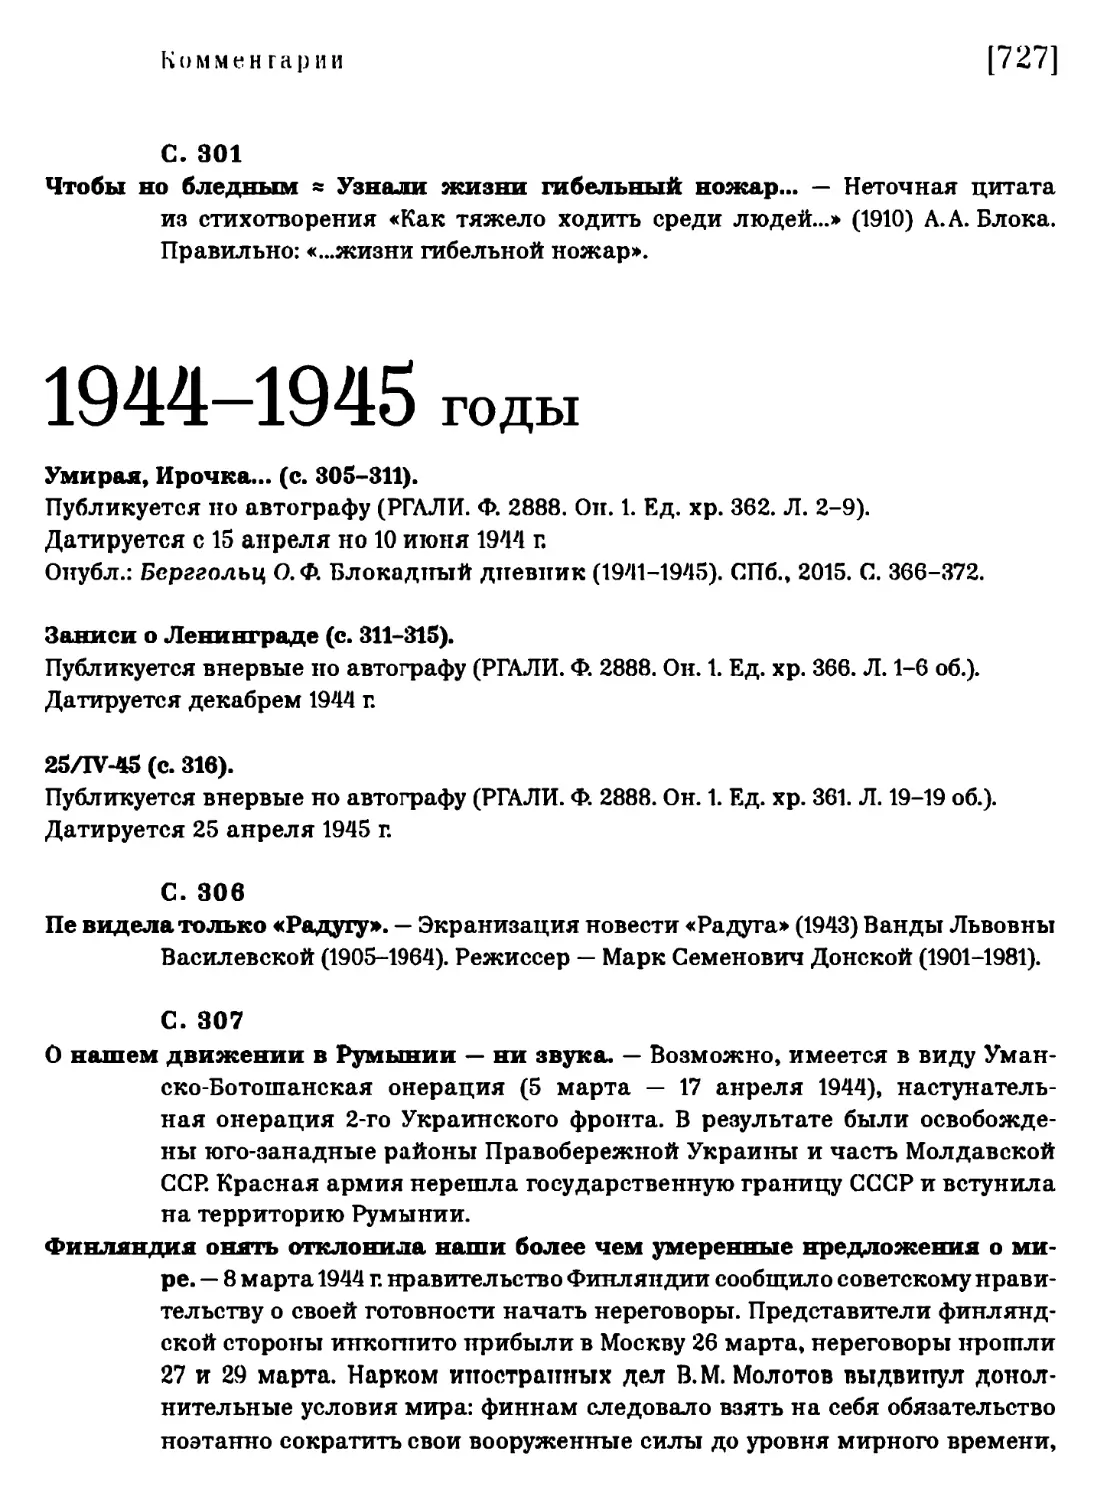 1944-1945 годы